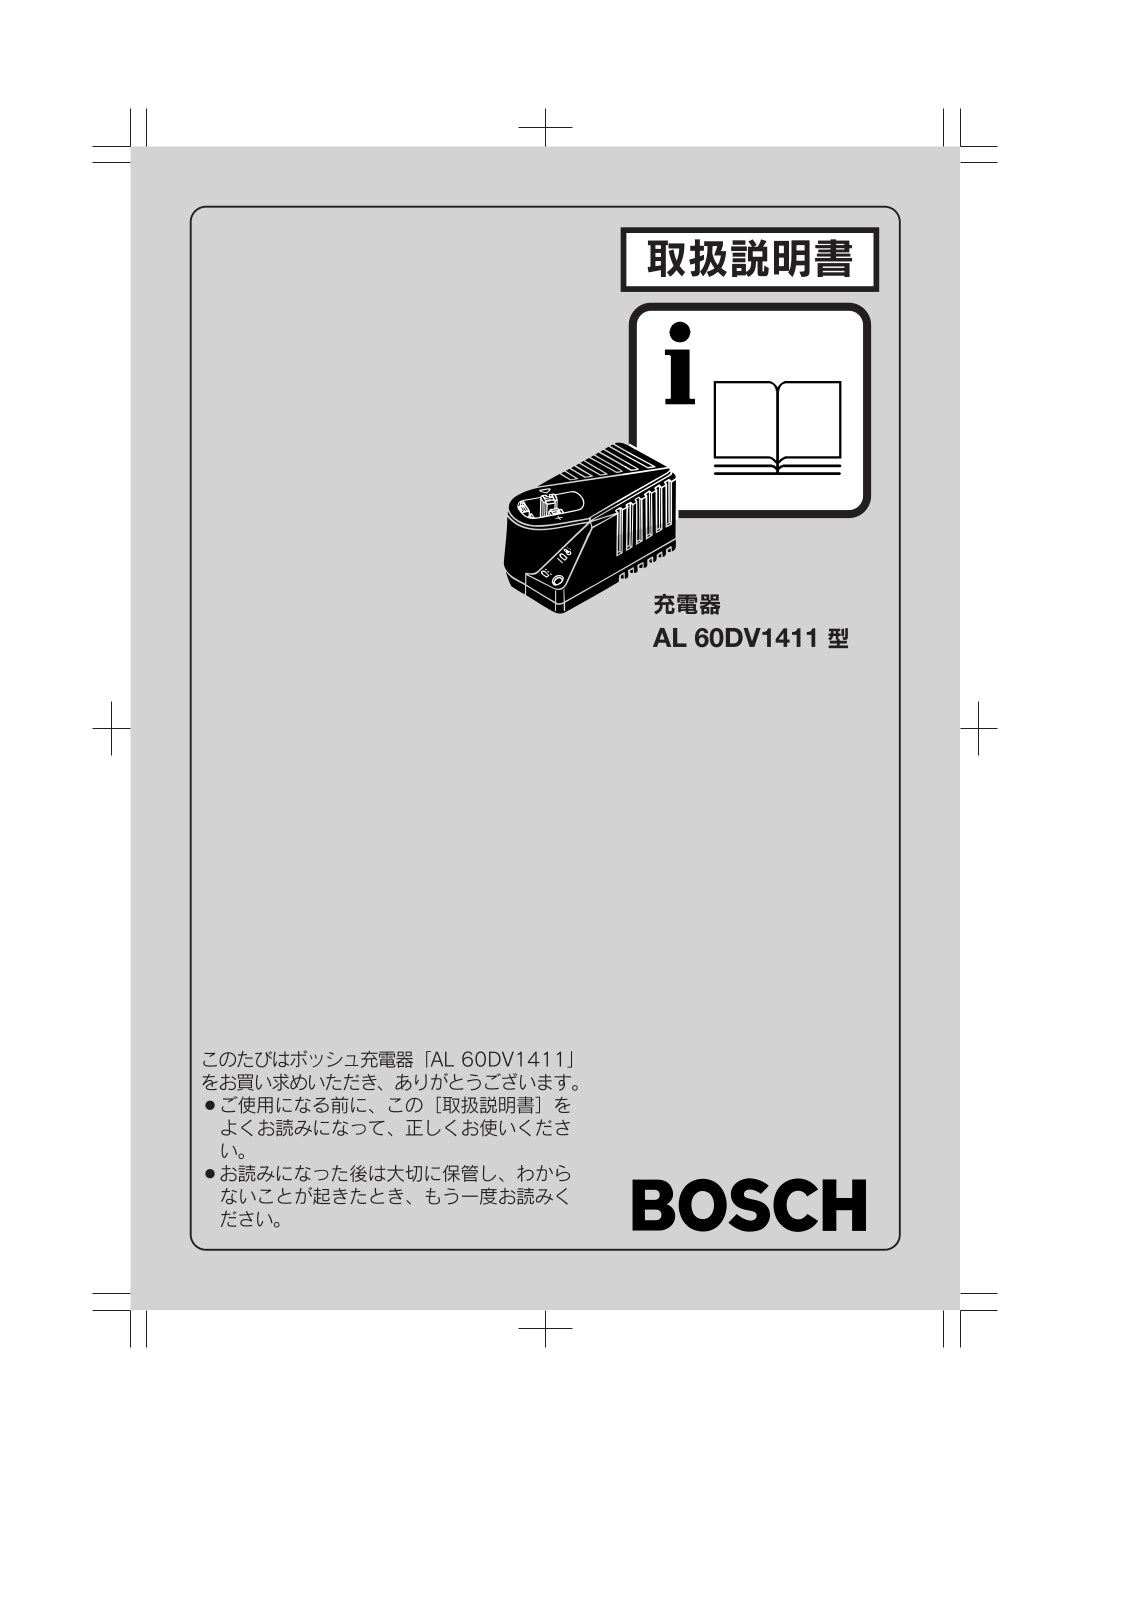 Bosch AL 60 DV1411 User Manual